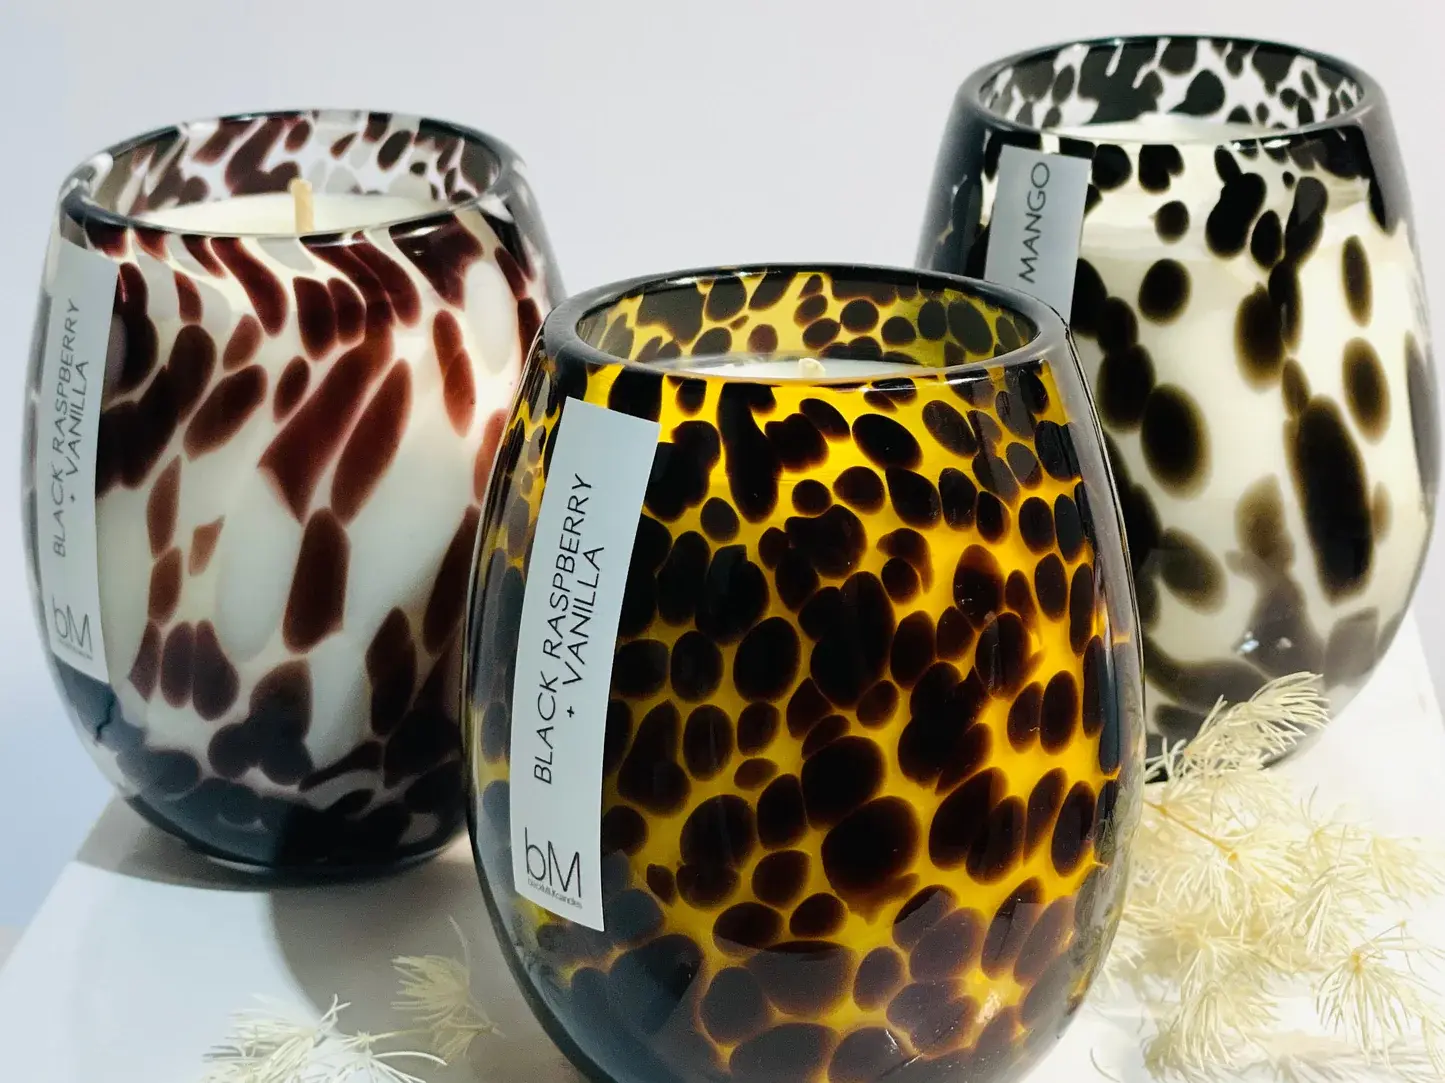 Blackmilk Confetti Leopard Candle- Black Raspberry Vanilla